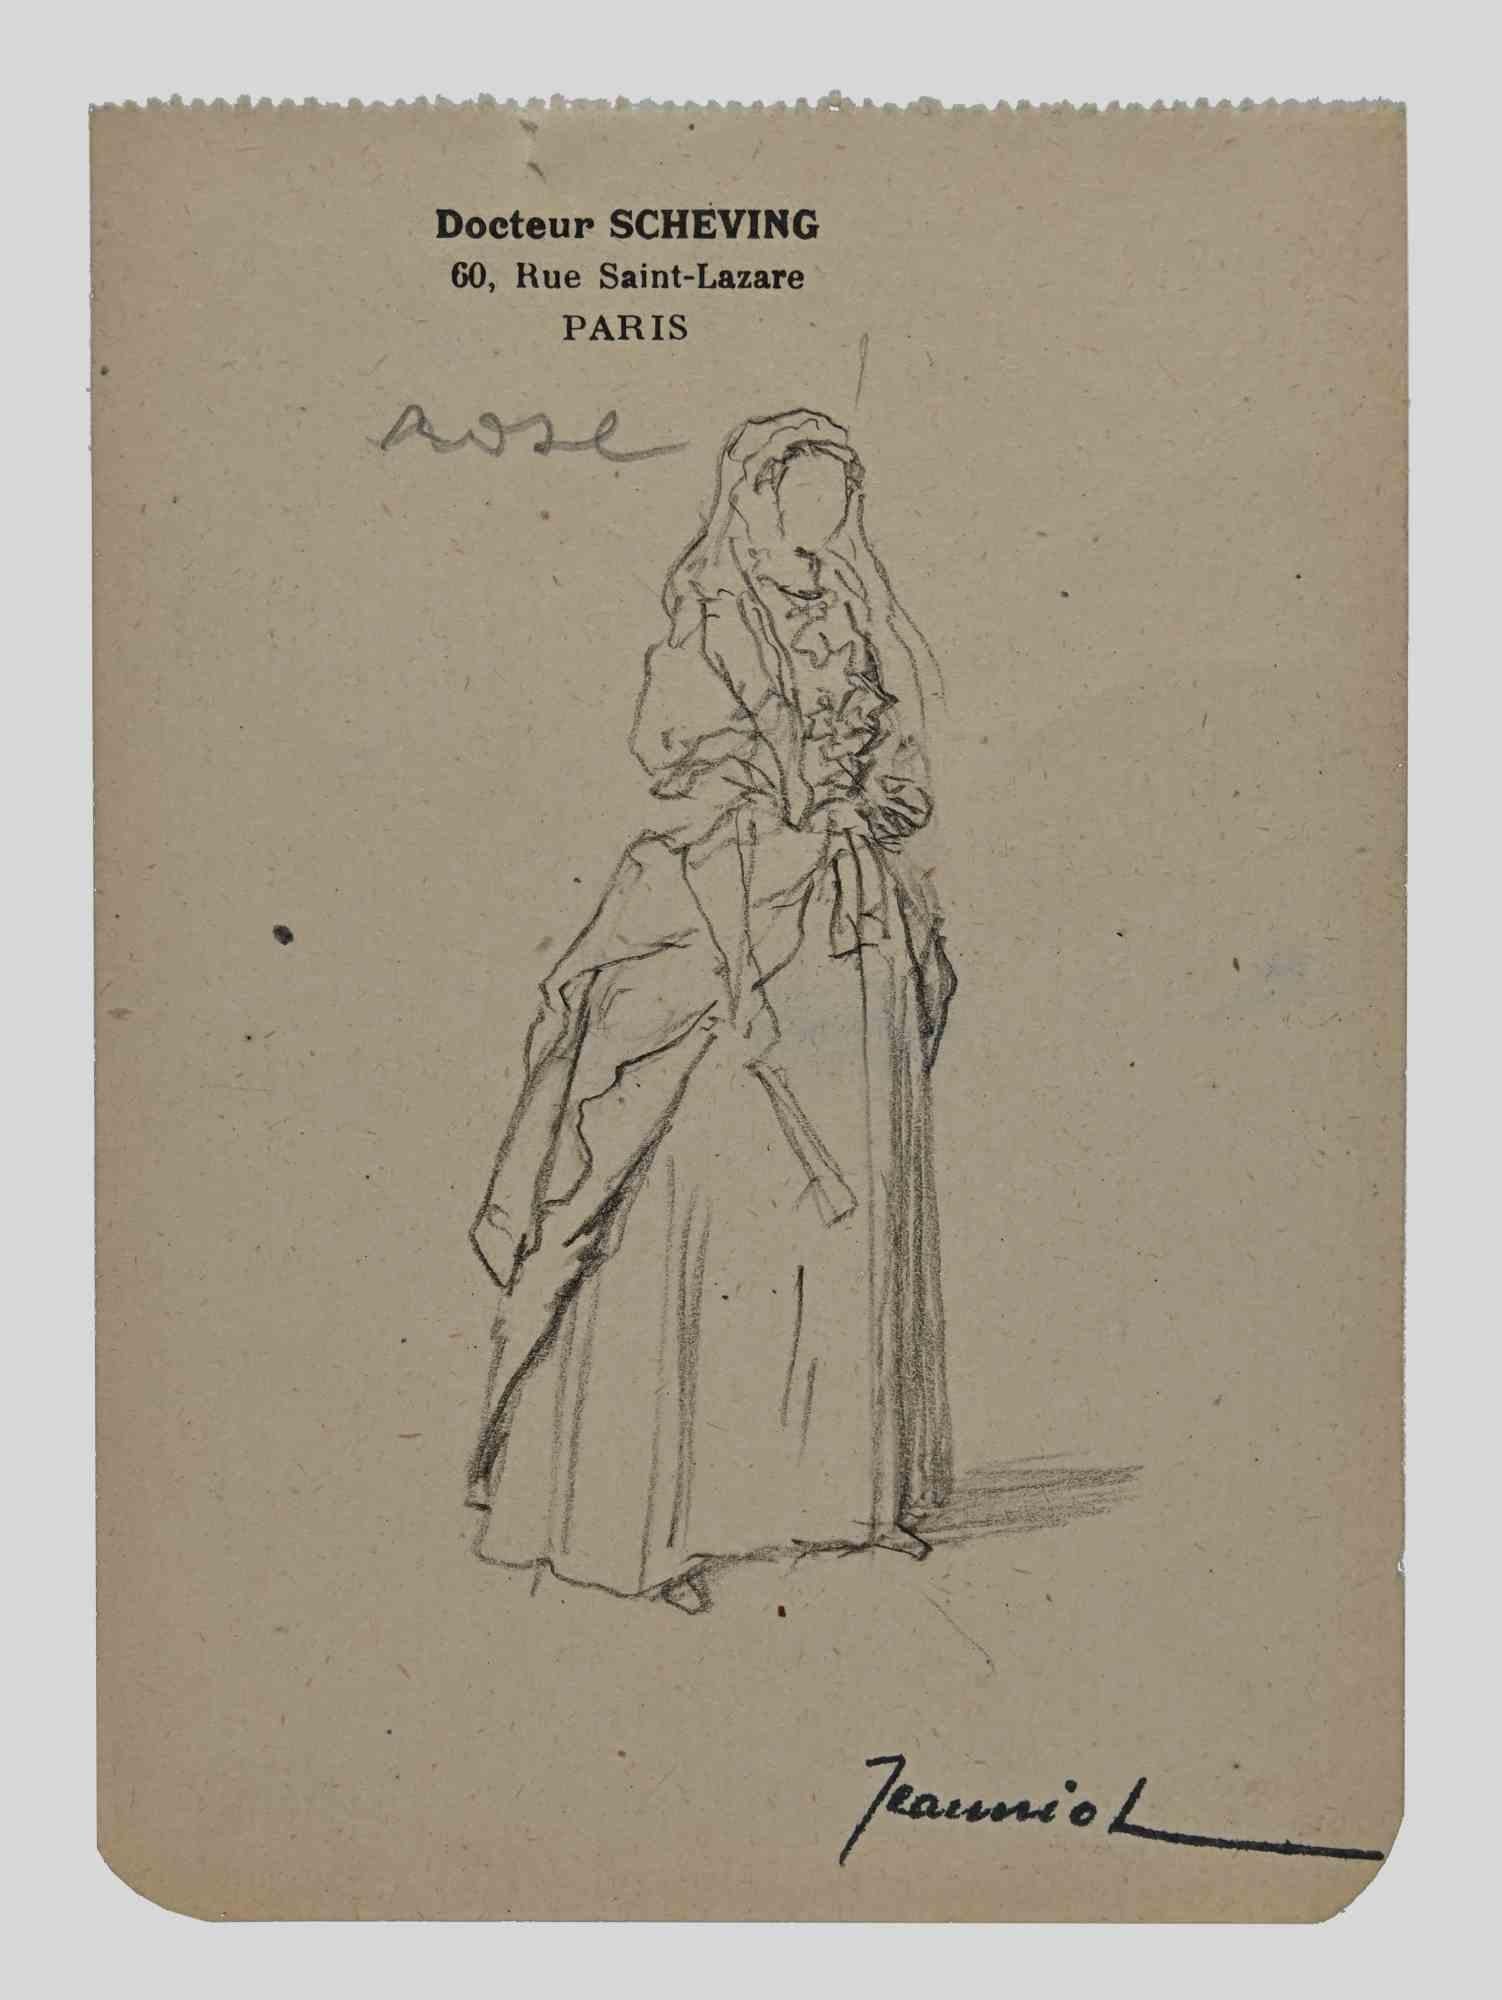 Femme est un dessin original sur papier réalisé par le peintre Pierre Georges Jeanniot (1848-1934).

Dessin au crayon.

Signé à la main en bas.

Bon état, sauf pour le vieillissement.

L'œuvre d'art est représentée par des coups de pinceau habiles